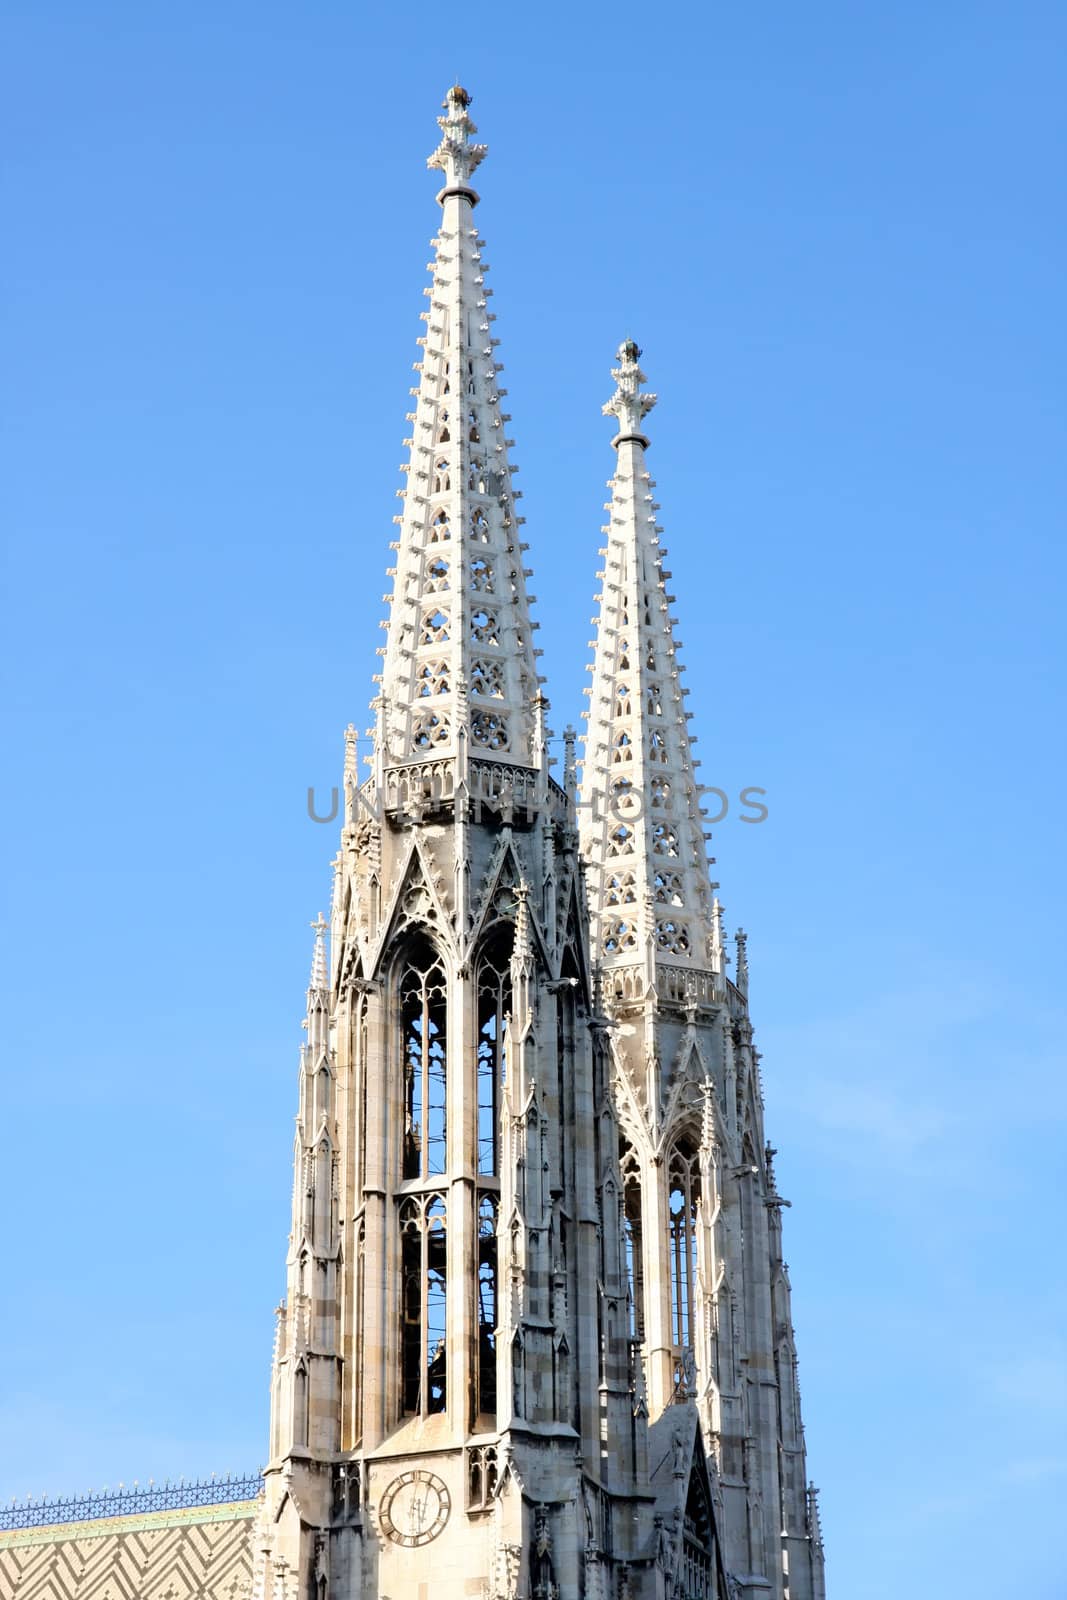 Votivkirche in Vienna, Austria by vladacanon